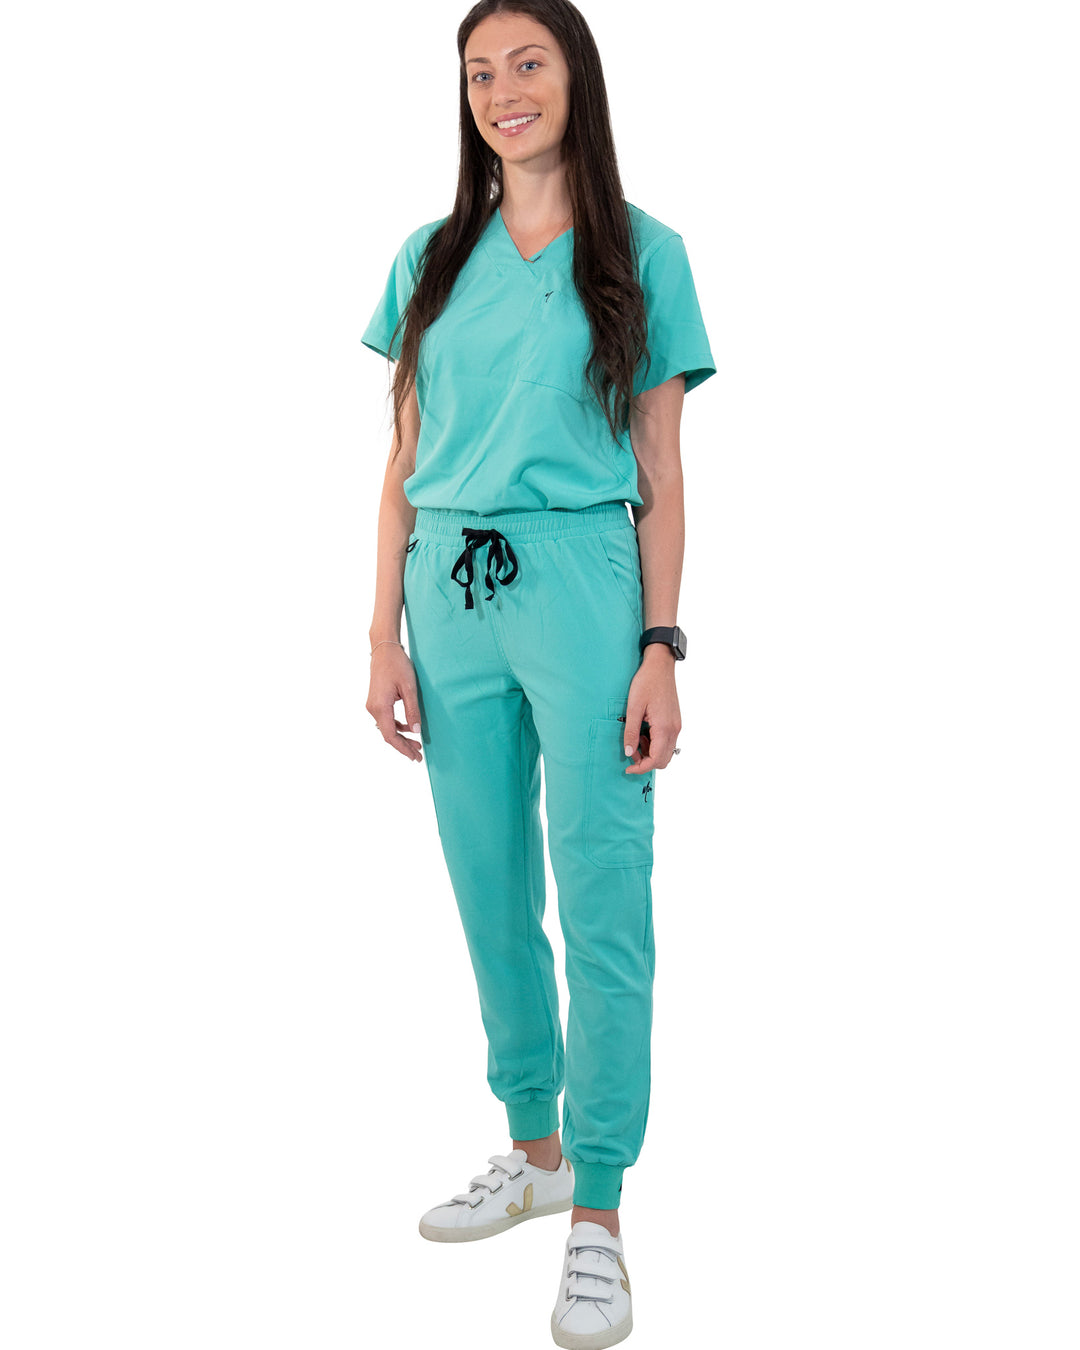 women's Surgical Green Jogger Scrub Pants - Jogger Scrubs by Millennials In Medicine (Mim Scrubs)